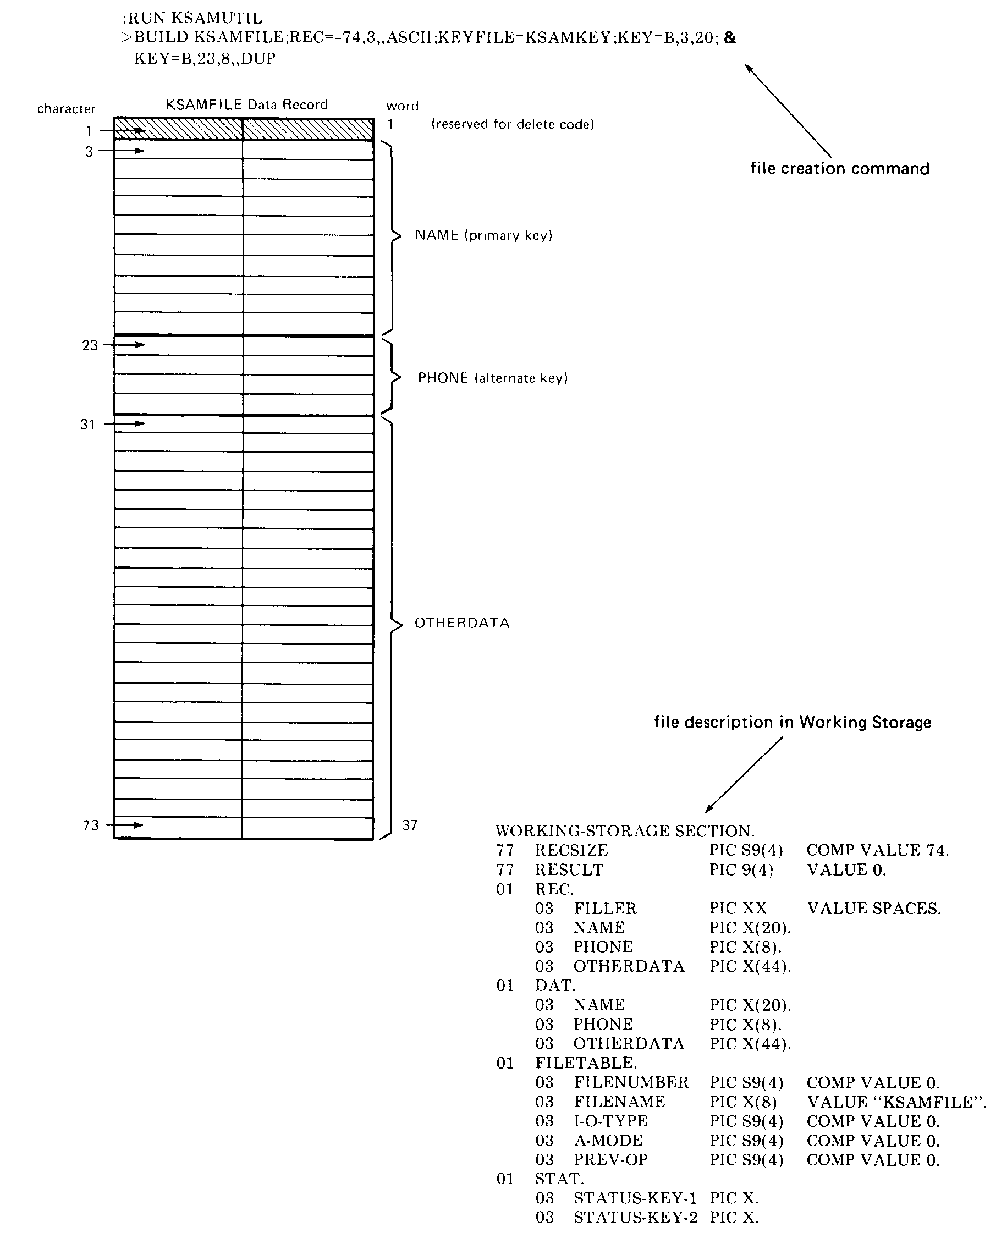 [Representation of KSAMFILE Used in COBOL Examples]